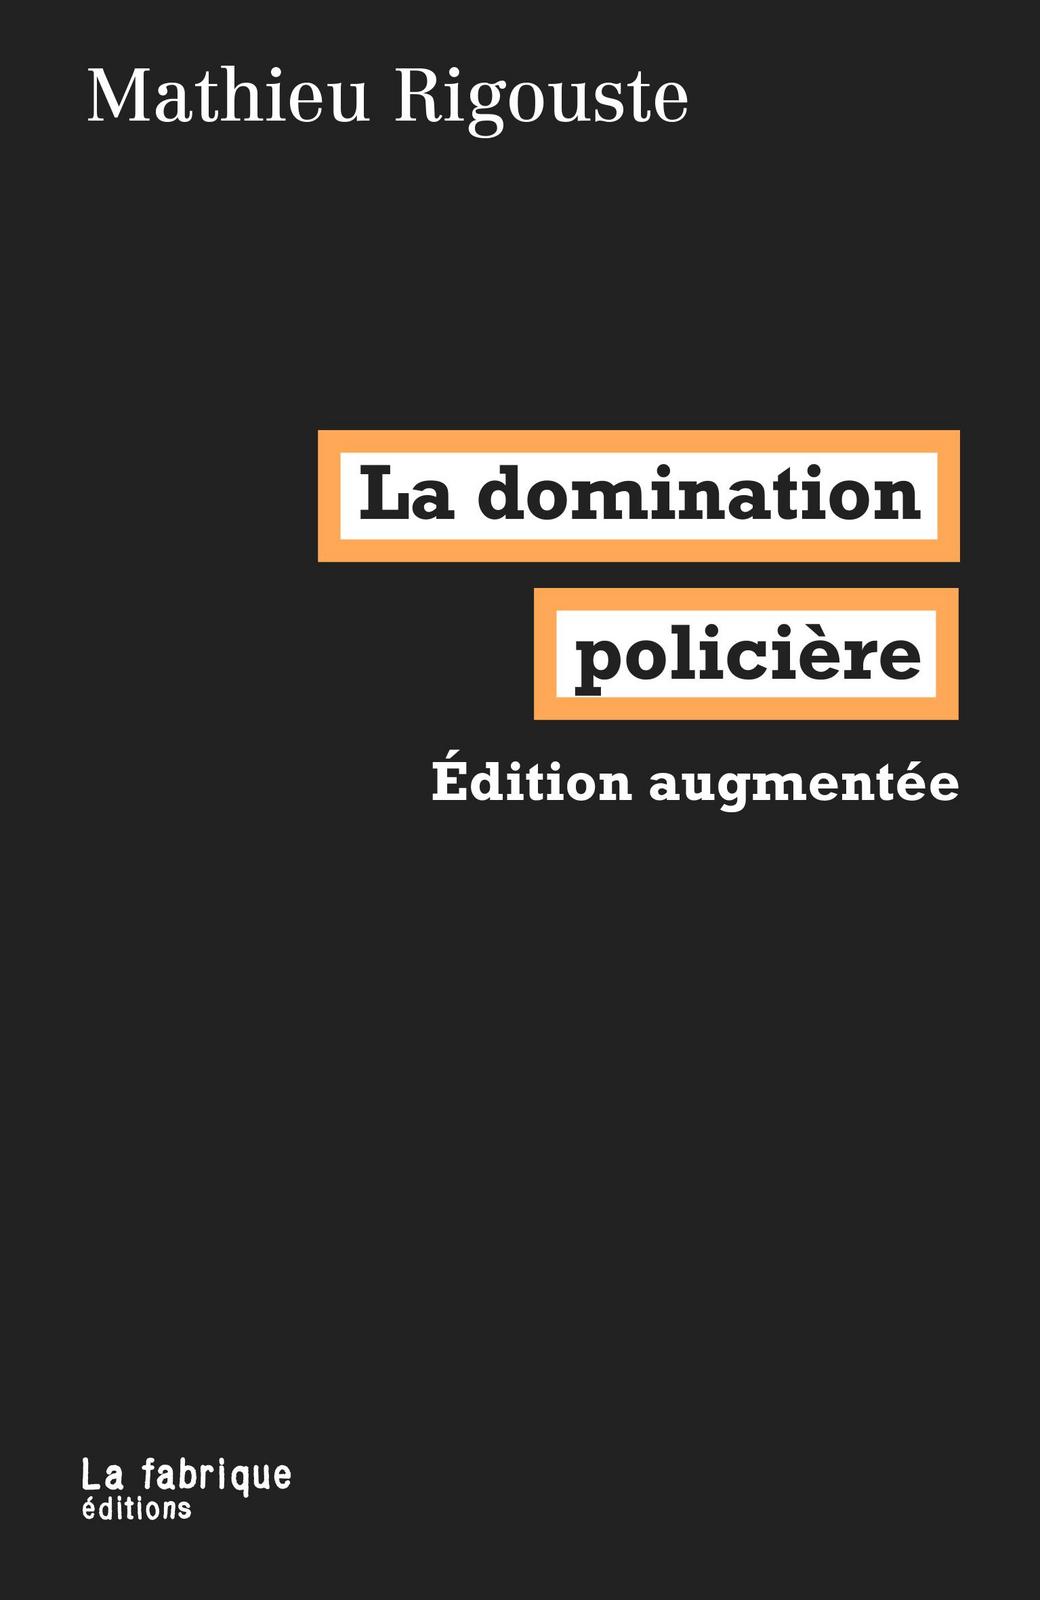 Mathieu Rigouste: La domination policière (French language, 2021, La Fabrique)